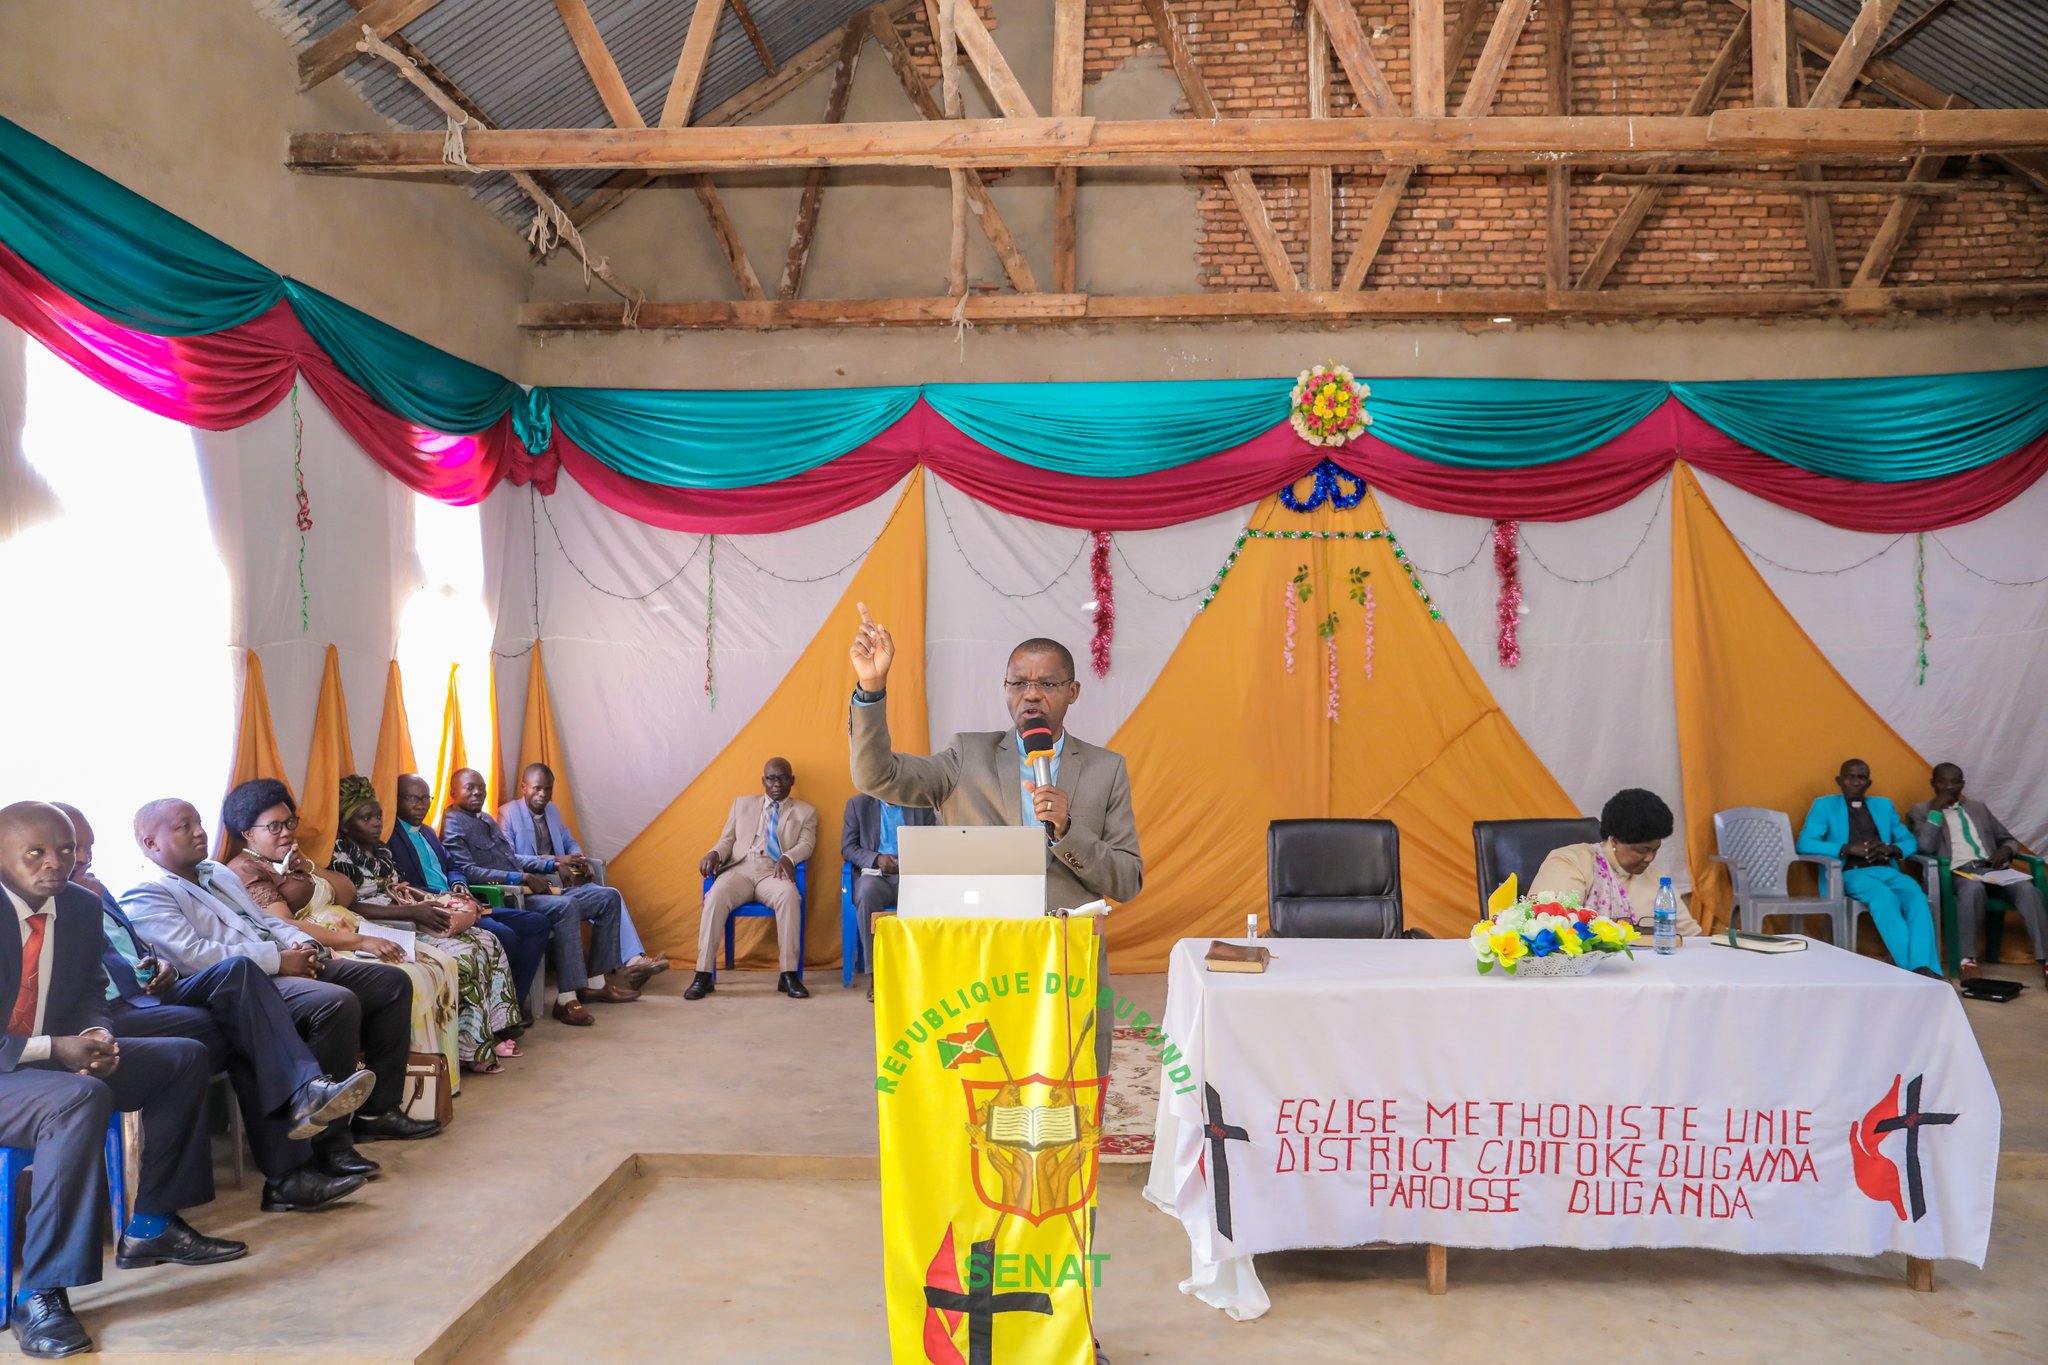 Les chrétiens de l’Eglise Méthodiste Unie de la commune Buganda invités à avoir l’amour du prochain